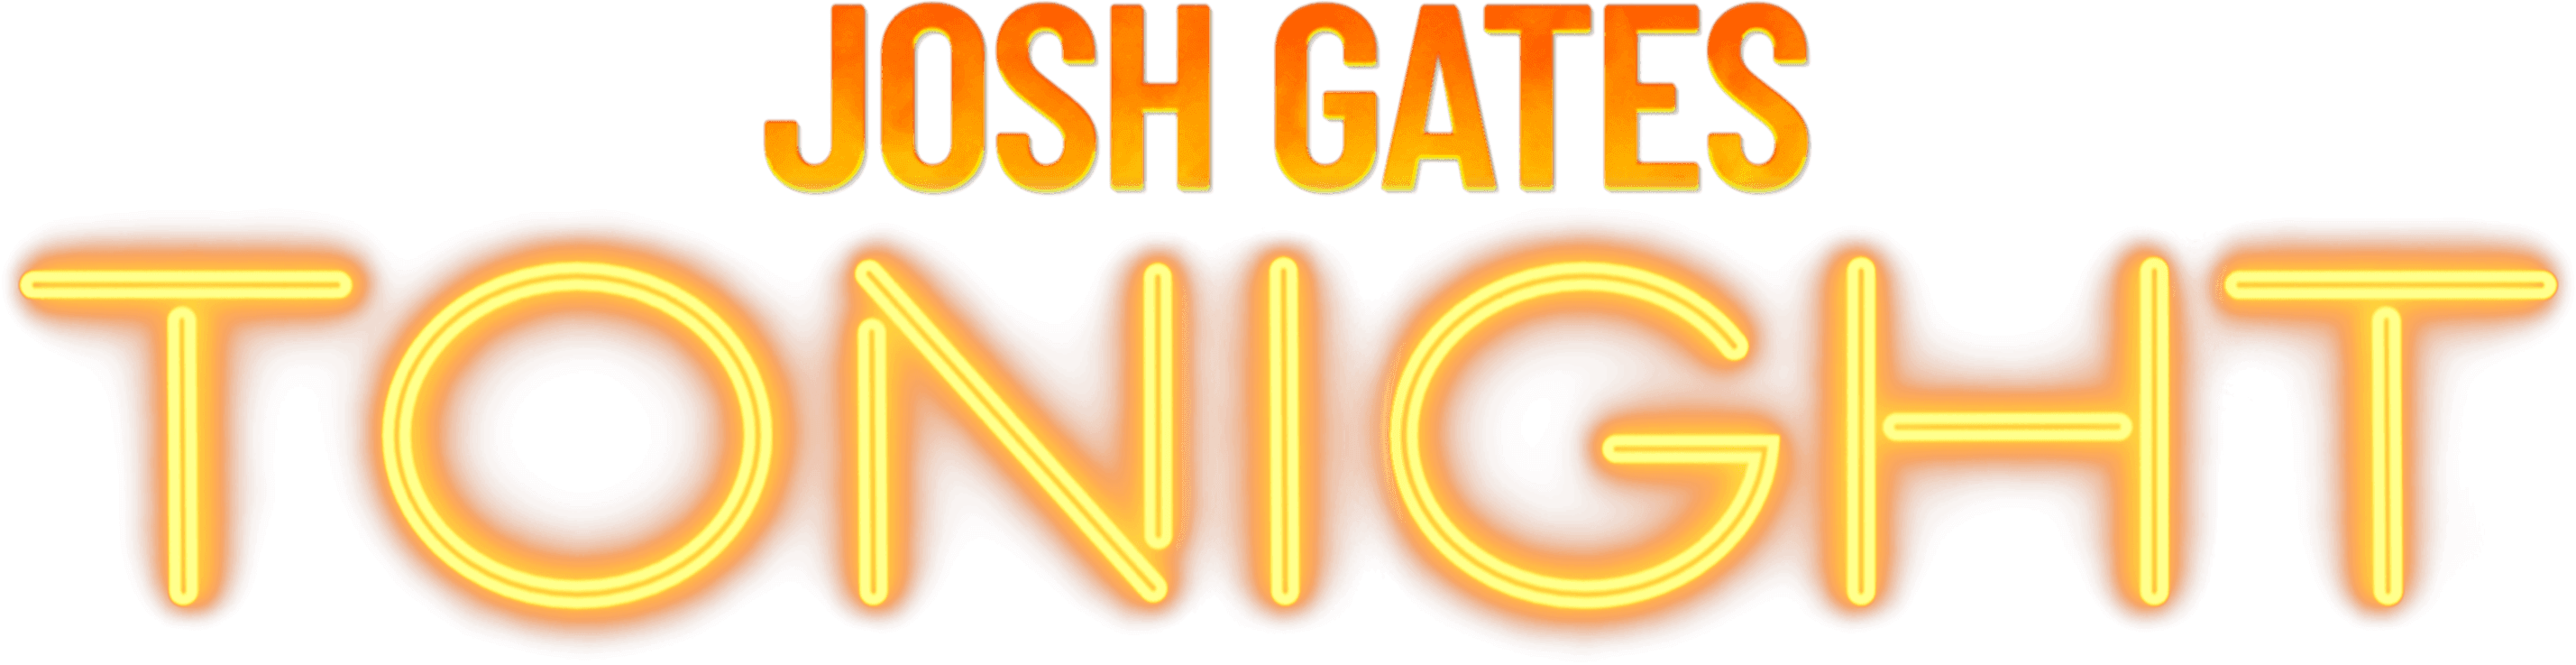 Josh Gates Tonight logo